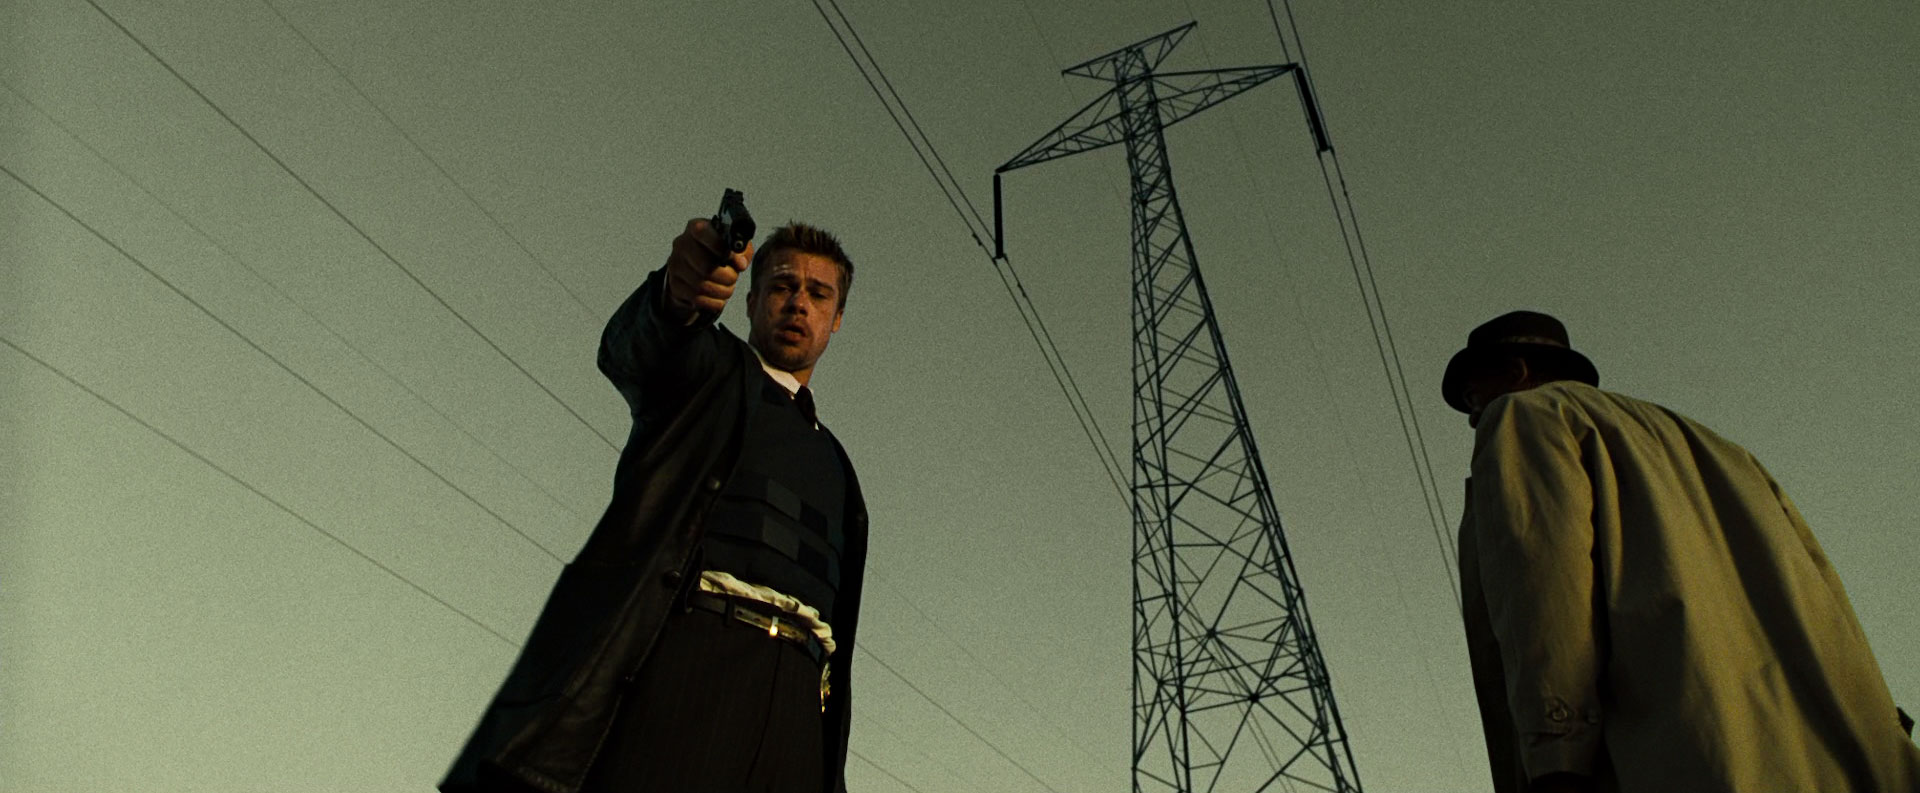 برد پیت درحال نشانه گرفتن اسلحه در فیلم Seven 